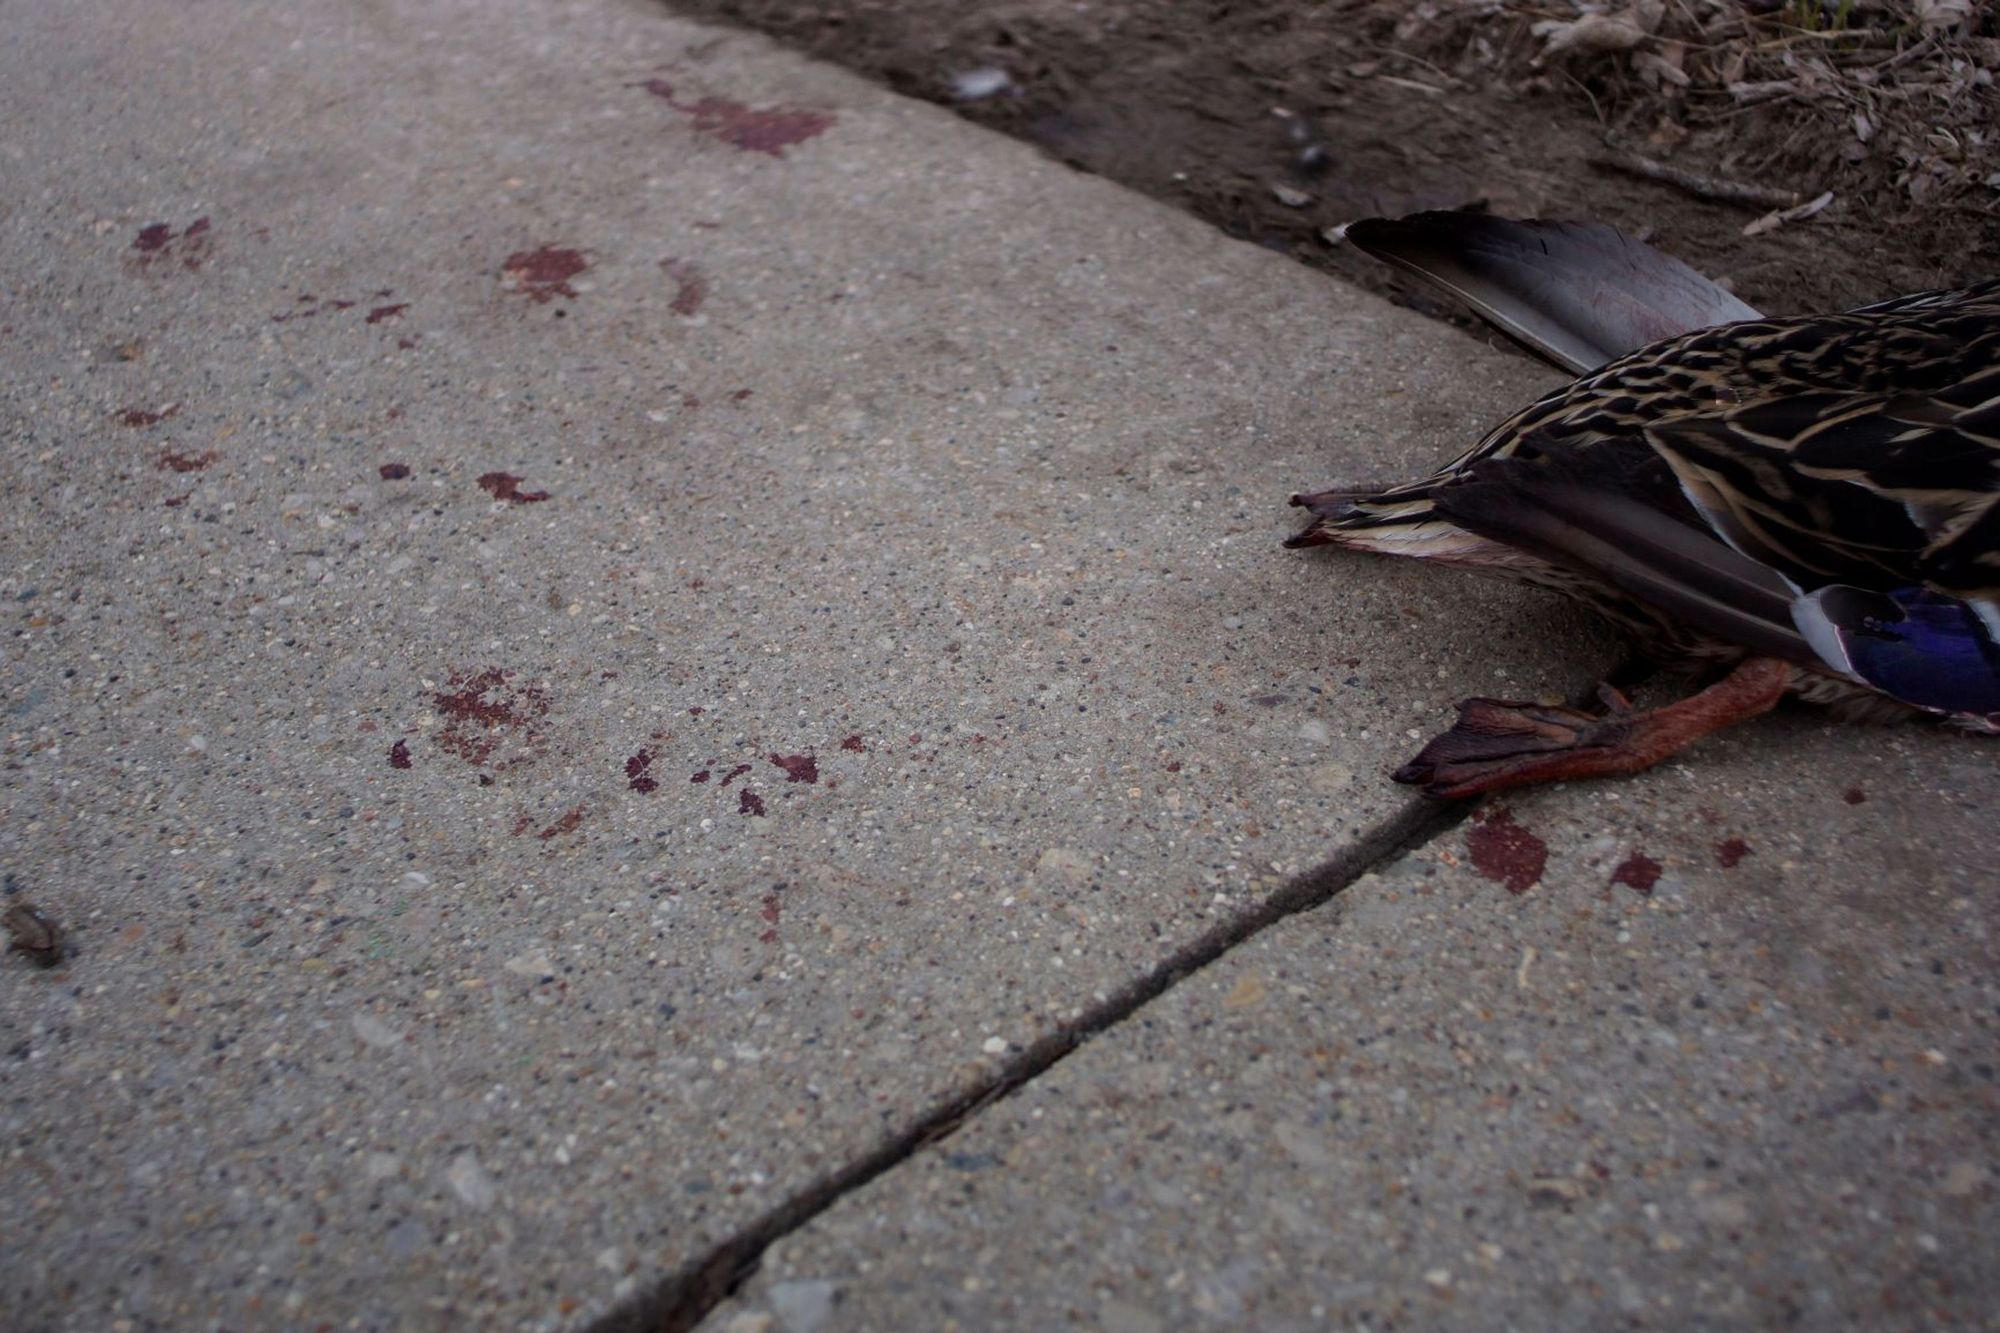 A dead duck on the sidewalk